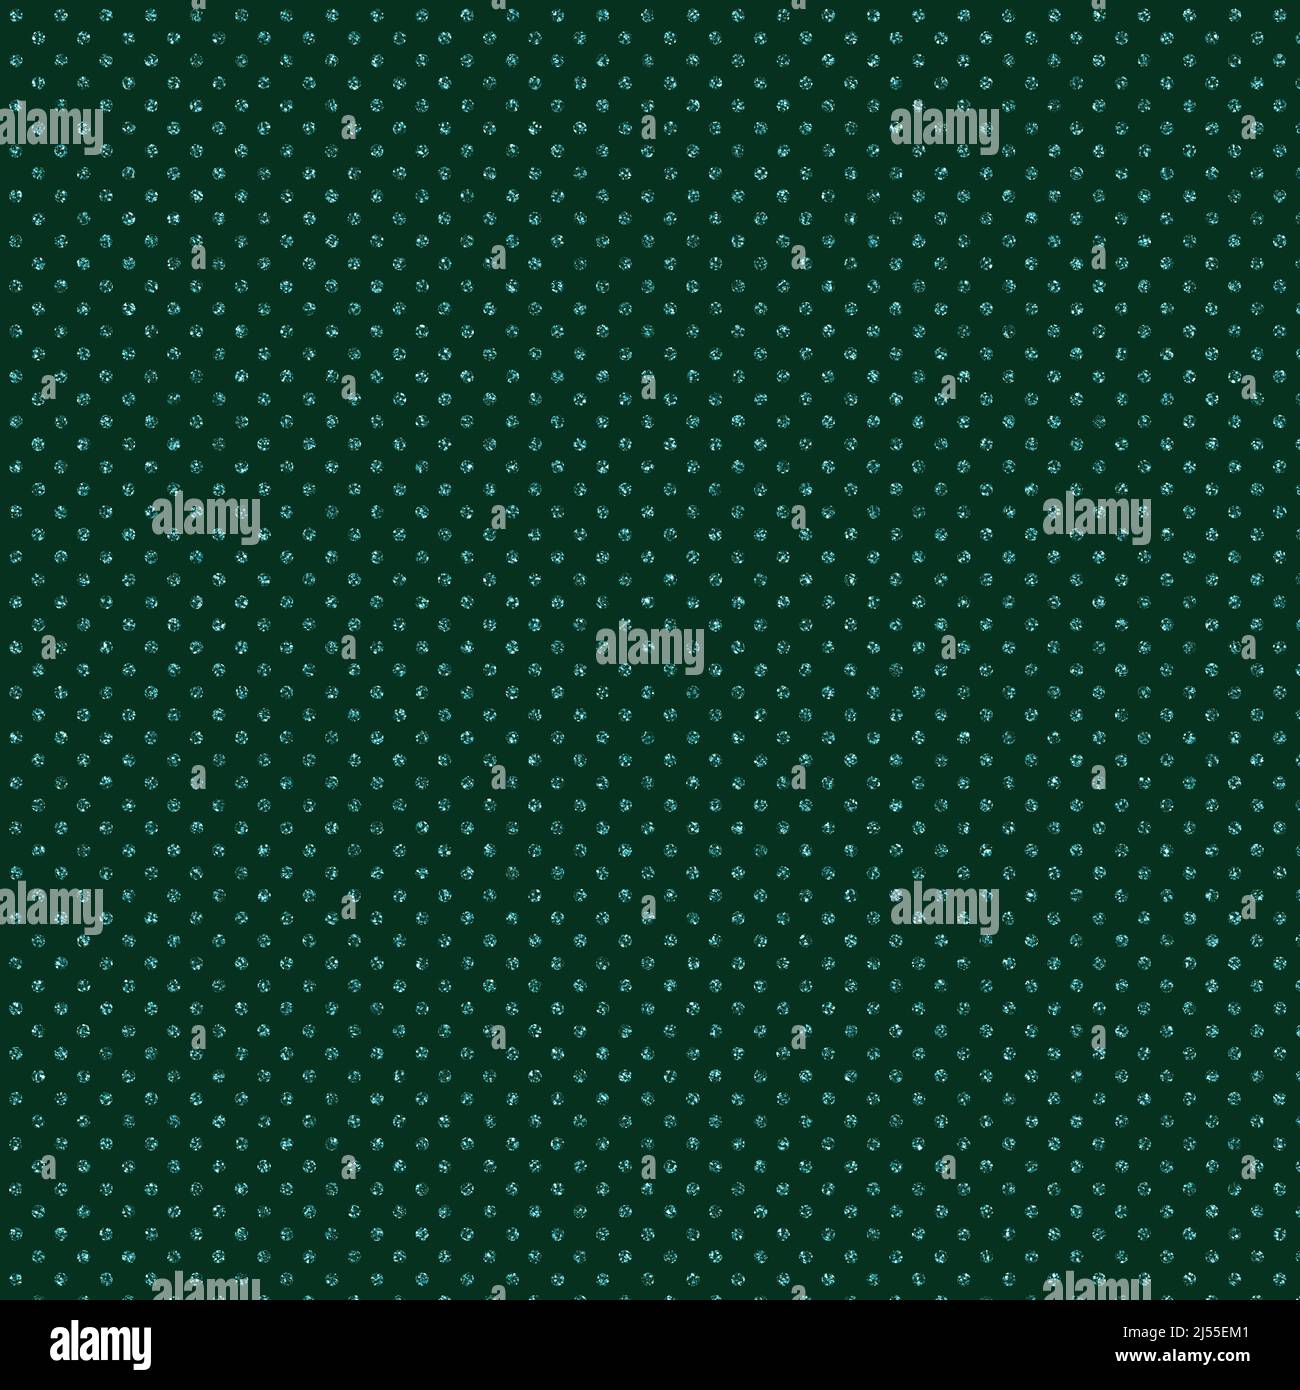 Hintergrund mit grünem Glitzer-Punktmuster. Die 12x12-Illustration hat kleine blaue Glitzer-Tupfen vor einem dunkelgrünen Hintergrund. Ideal für grafische des Stockfoto